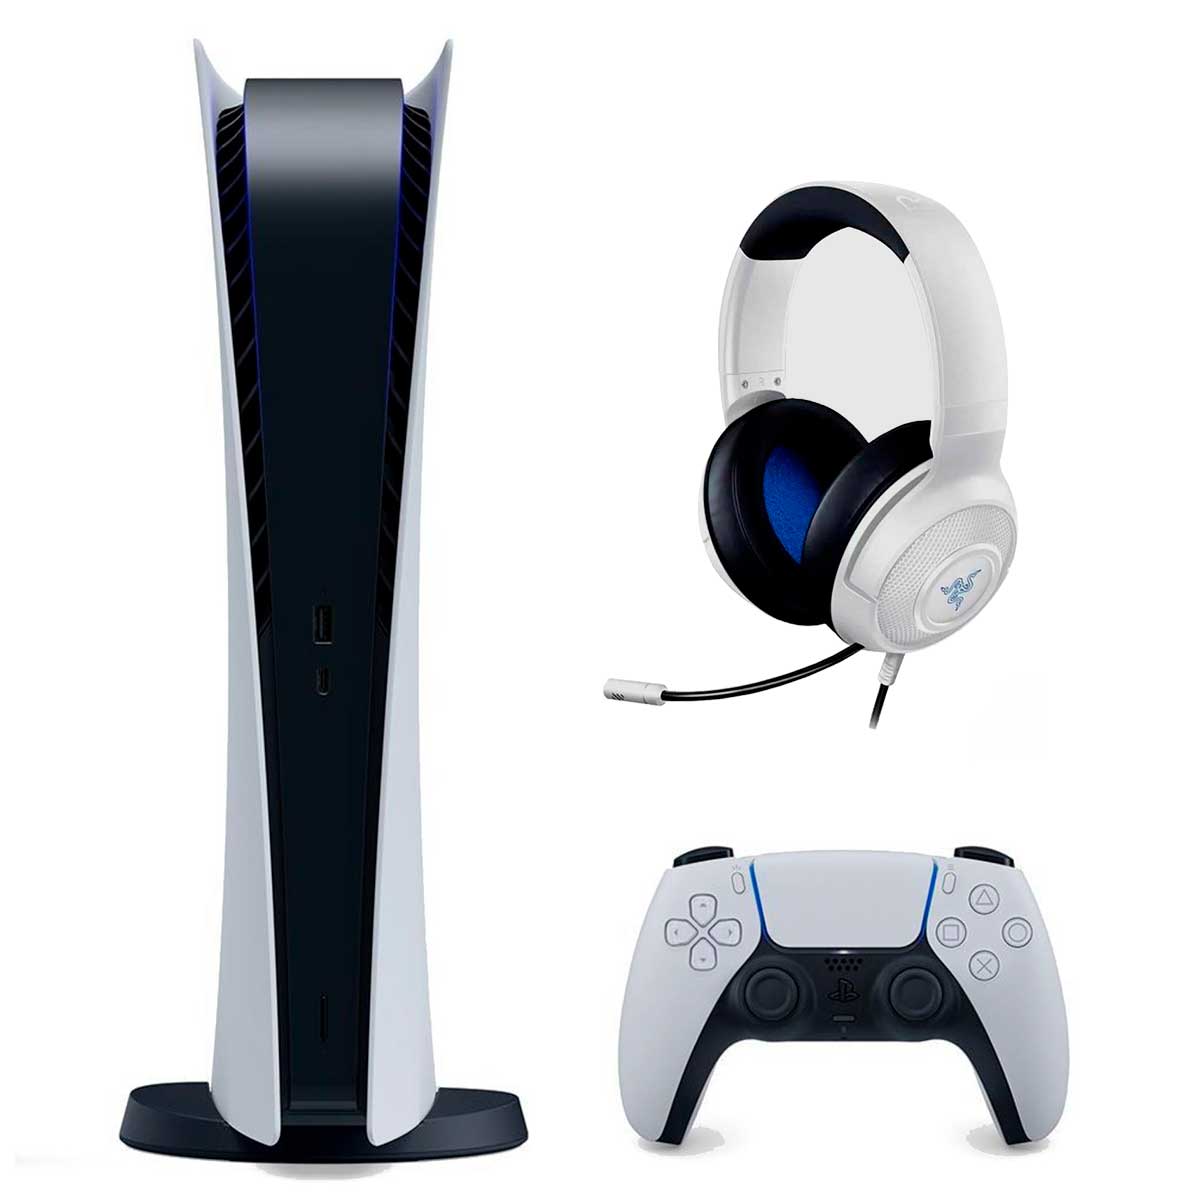 Saindo por R$ 3609,9: Console PS5 Edição Digital + Headset Gamer Razer Kraken X para Playstation | Pelando